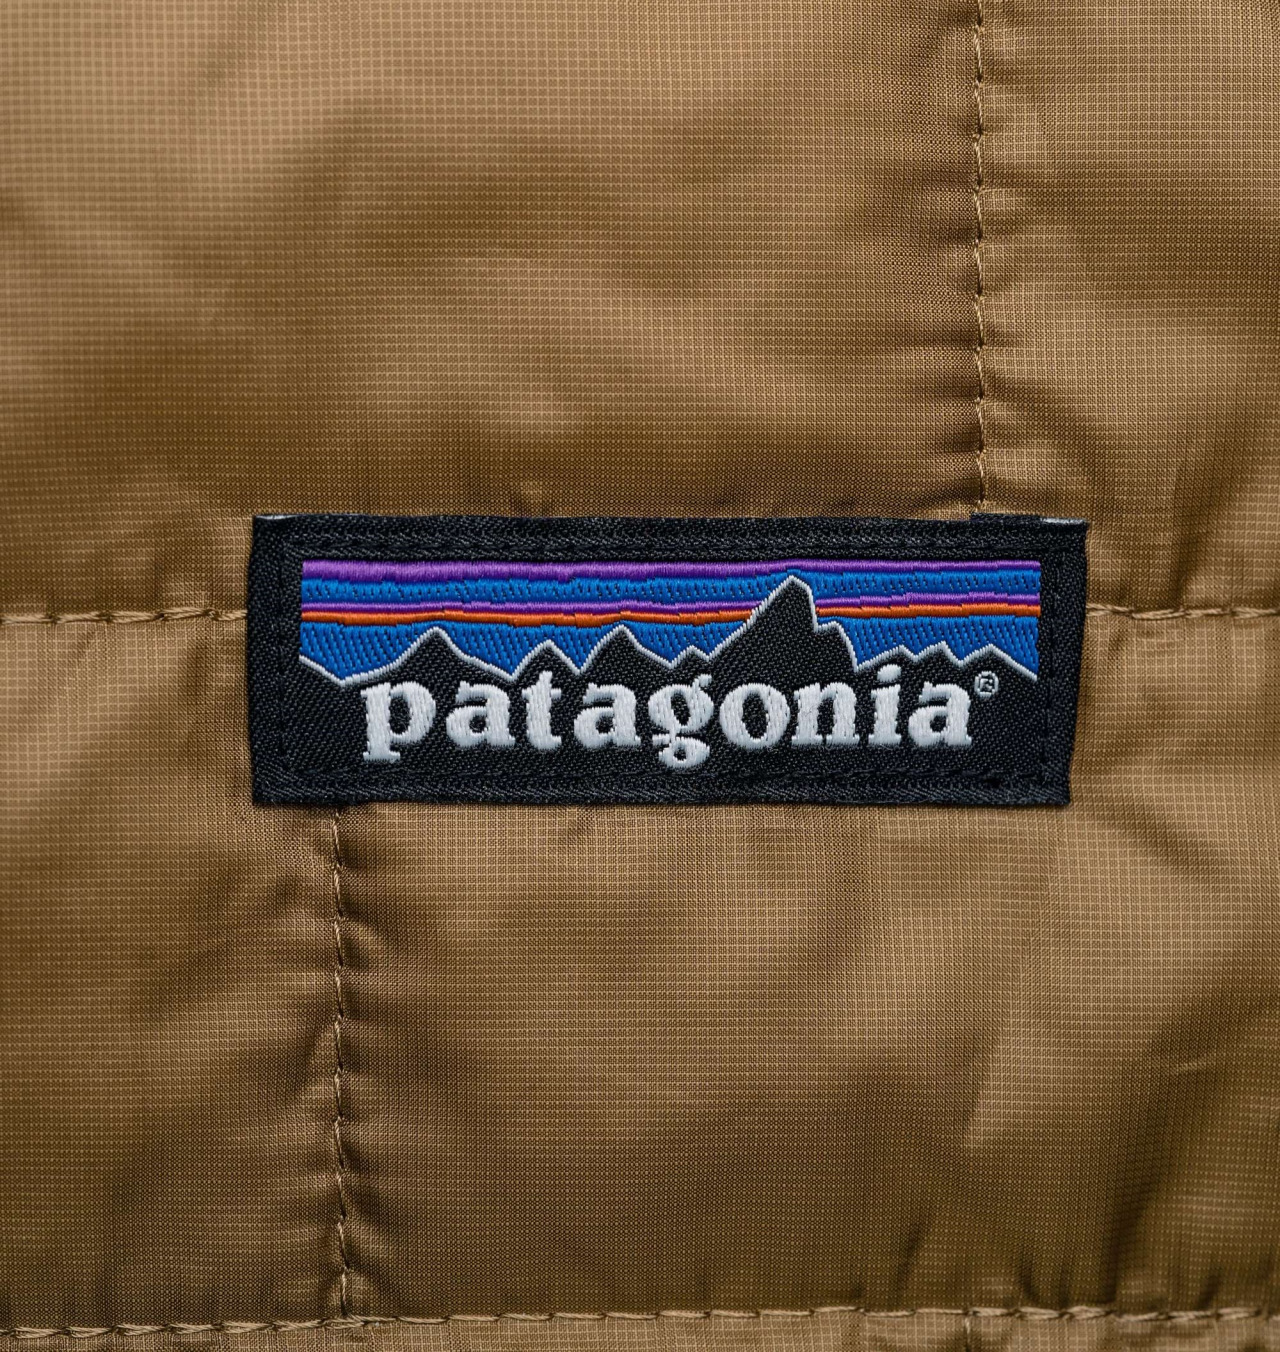 Patagonia: cuando el propósito manda